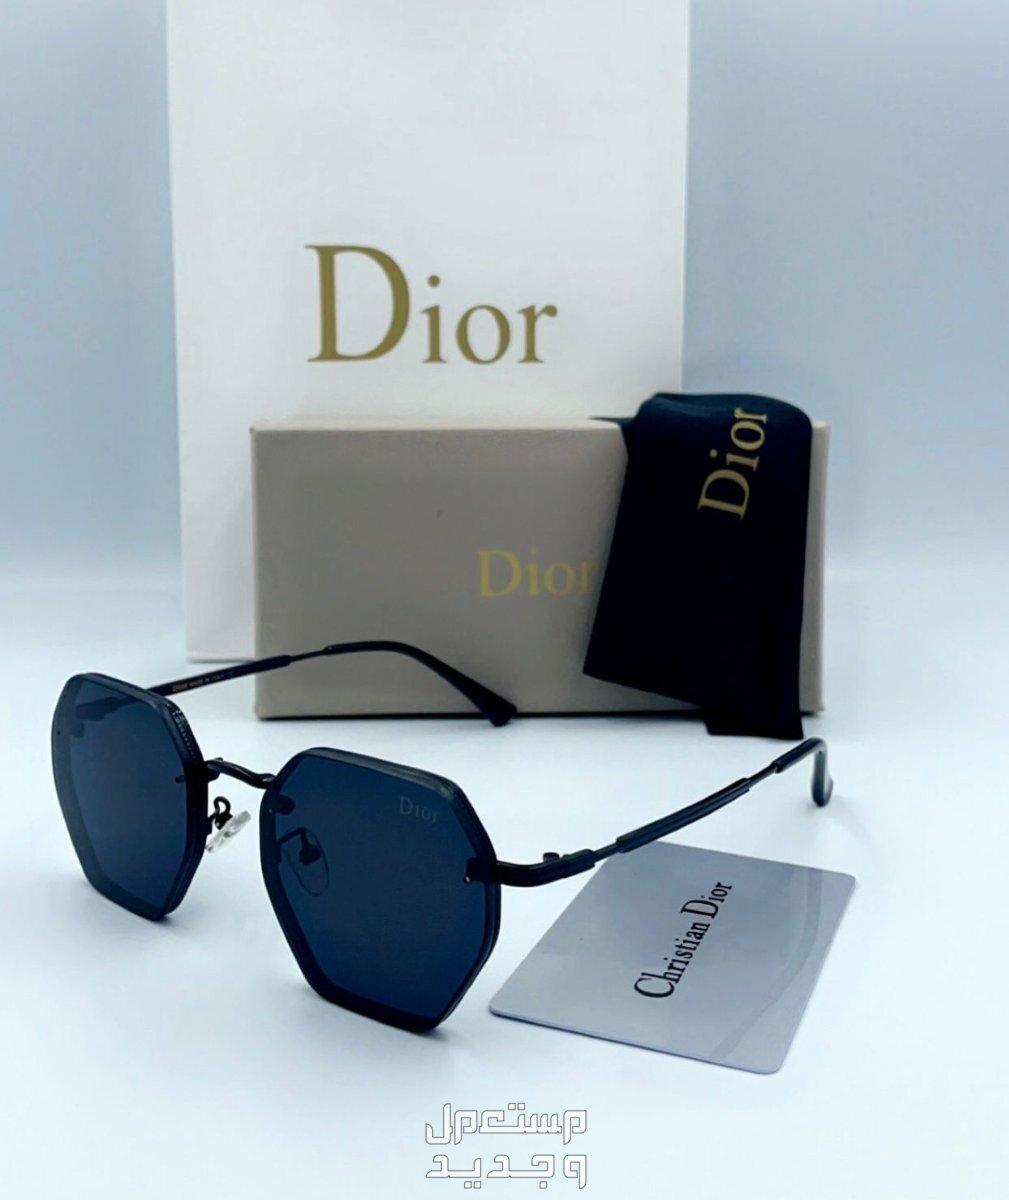 نظارات ماركة ديور / نظارة ديور / نظارة شمسية Dior / درجة اولى / تقليد / كوبي ون / مع ملحقات